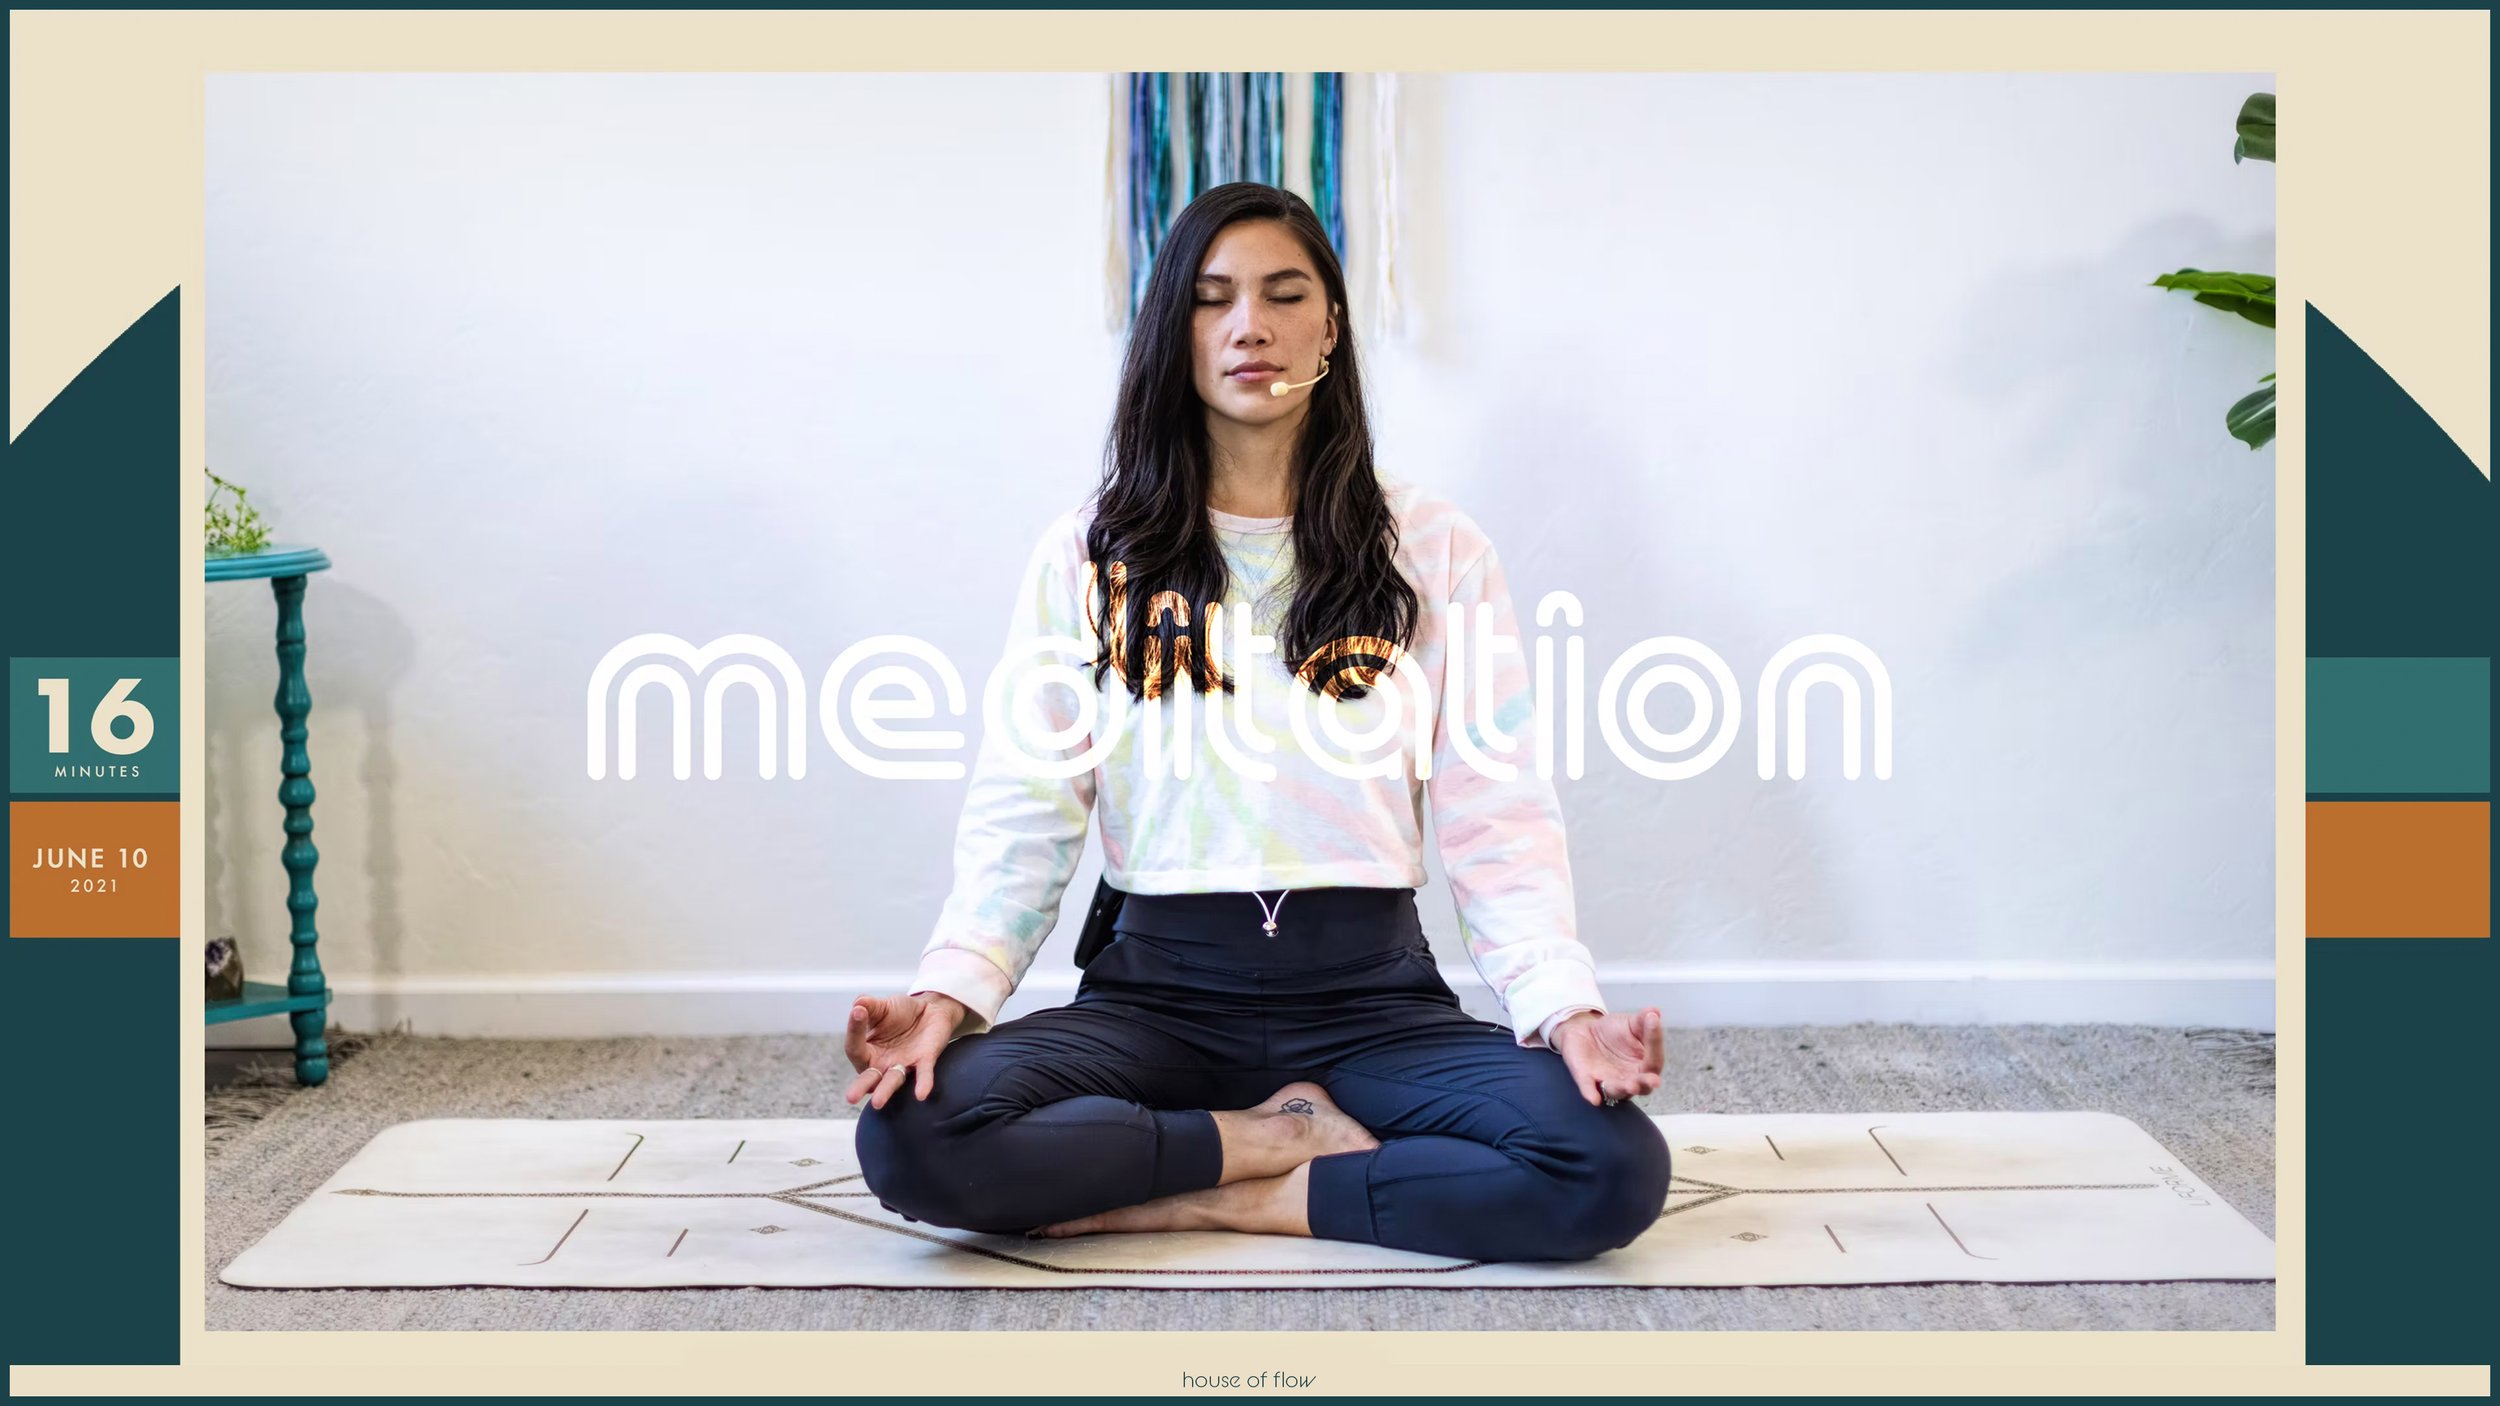 Meditation | Senses | 16 minutes